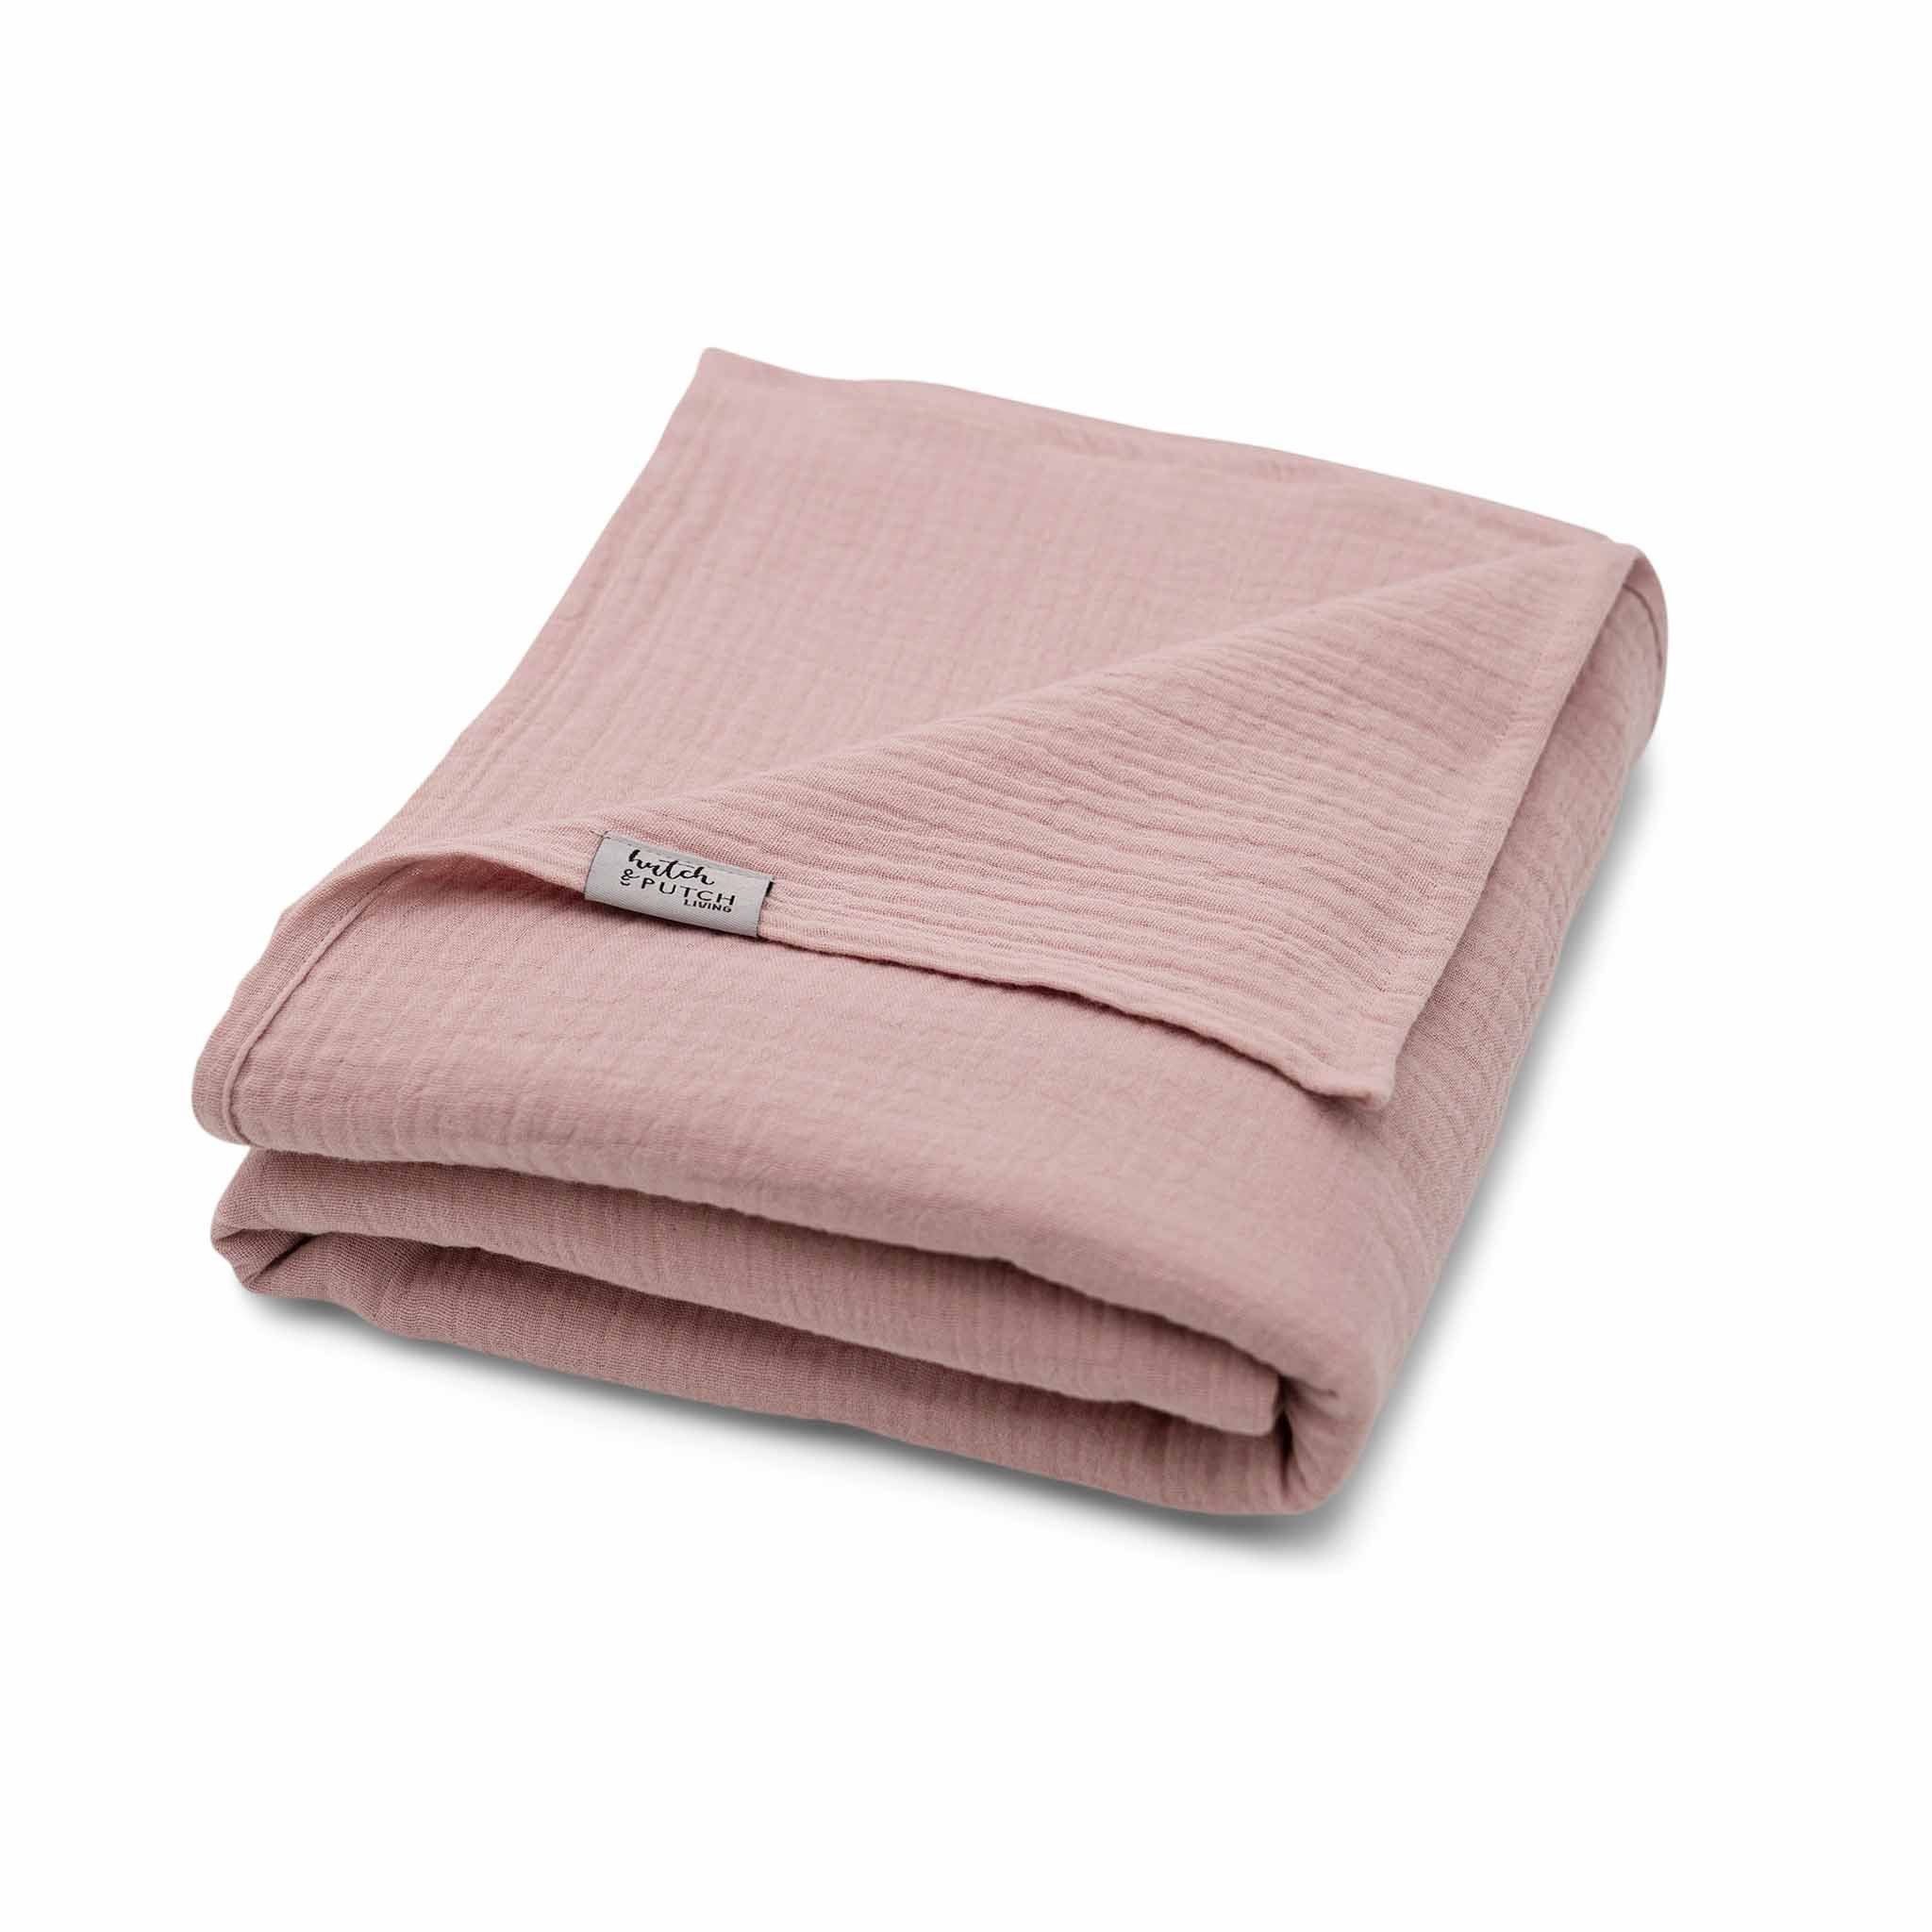 Wohndecke Musselin-Sommerdecke "Josephin", hutch&putch, die perfekte leichte Decke für den Sommer, aus 100% Bio-Baumwolle